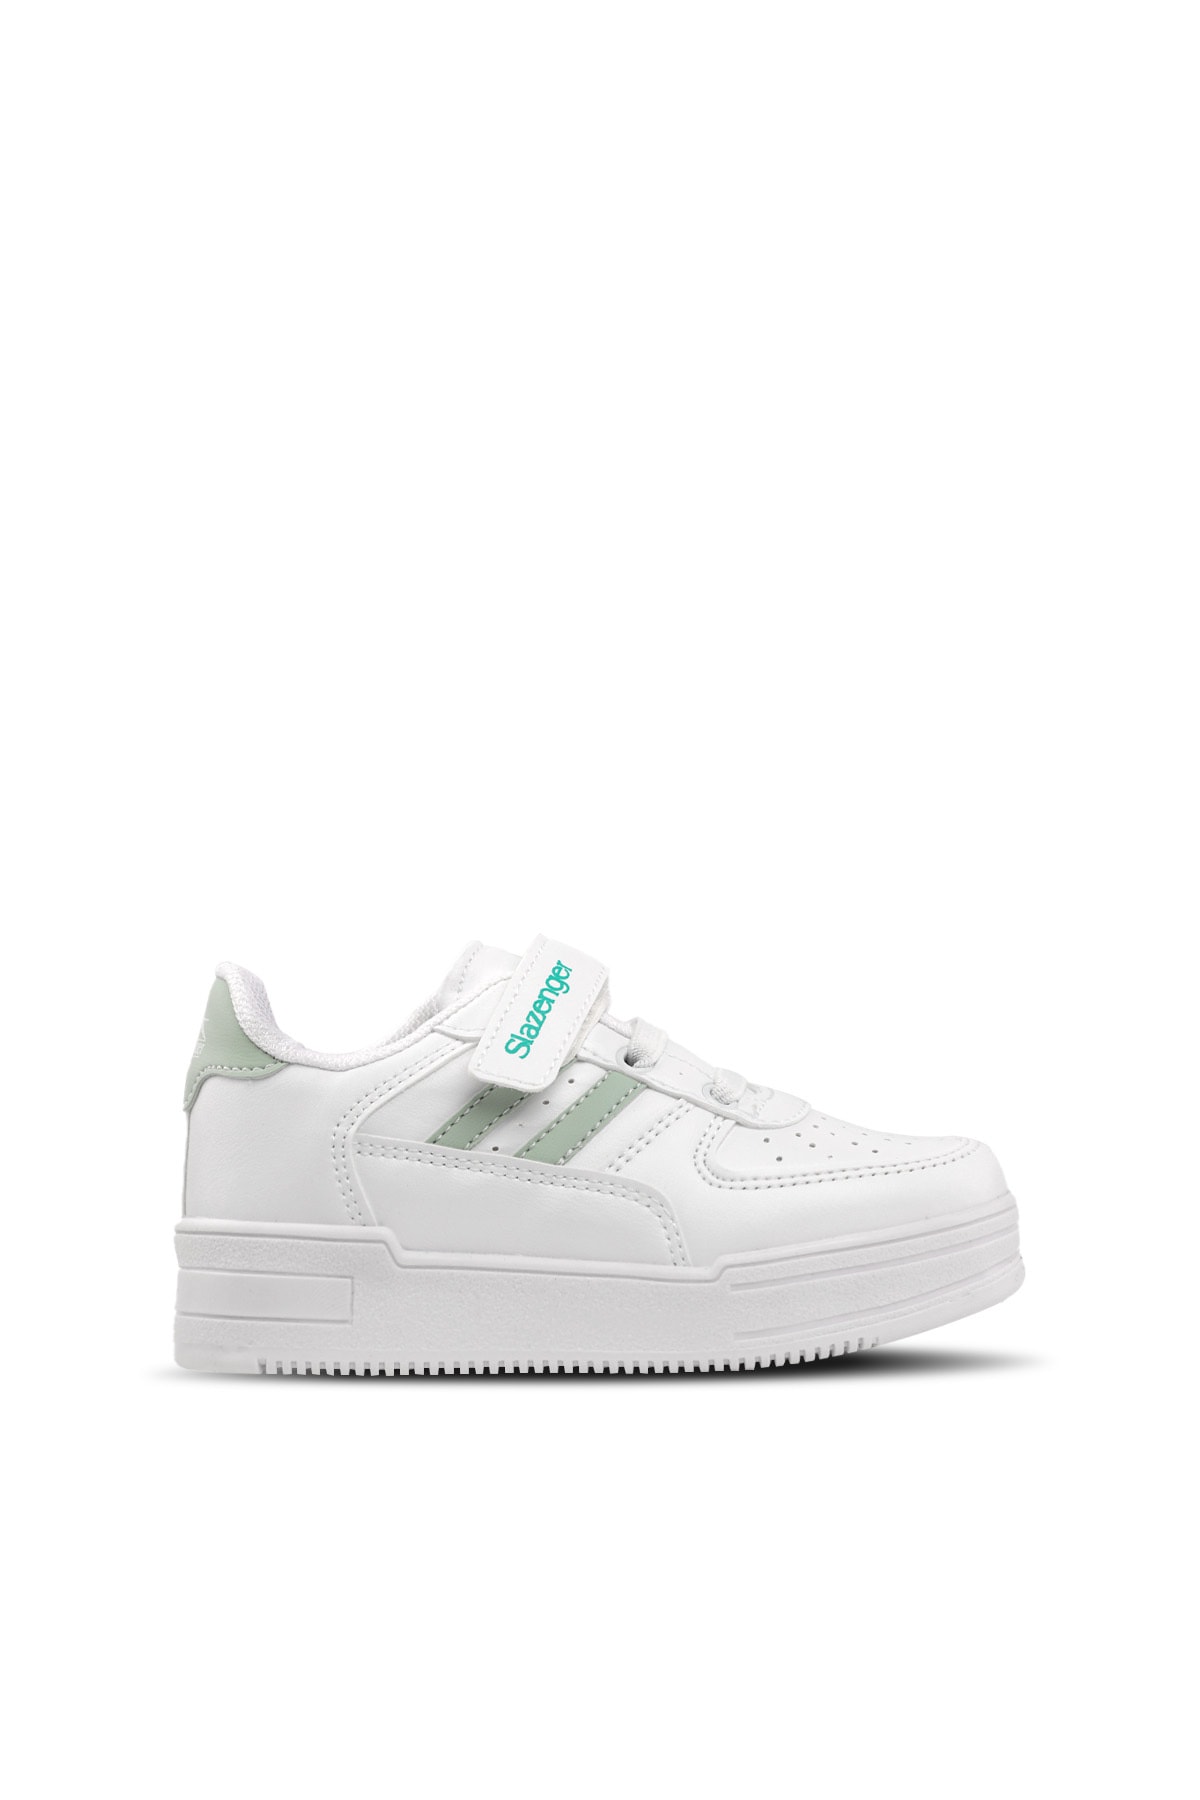 Slazenger Camp Sneaker Unisex Çocuk Ayakkabı Beyaz / Yeşil